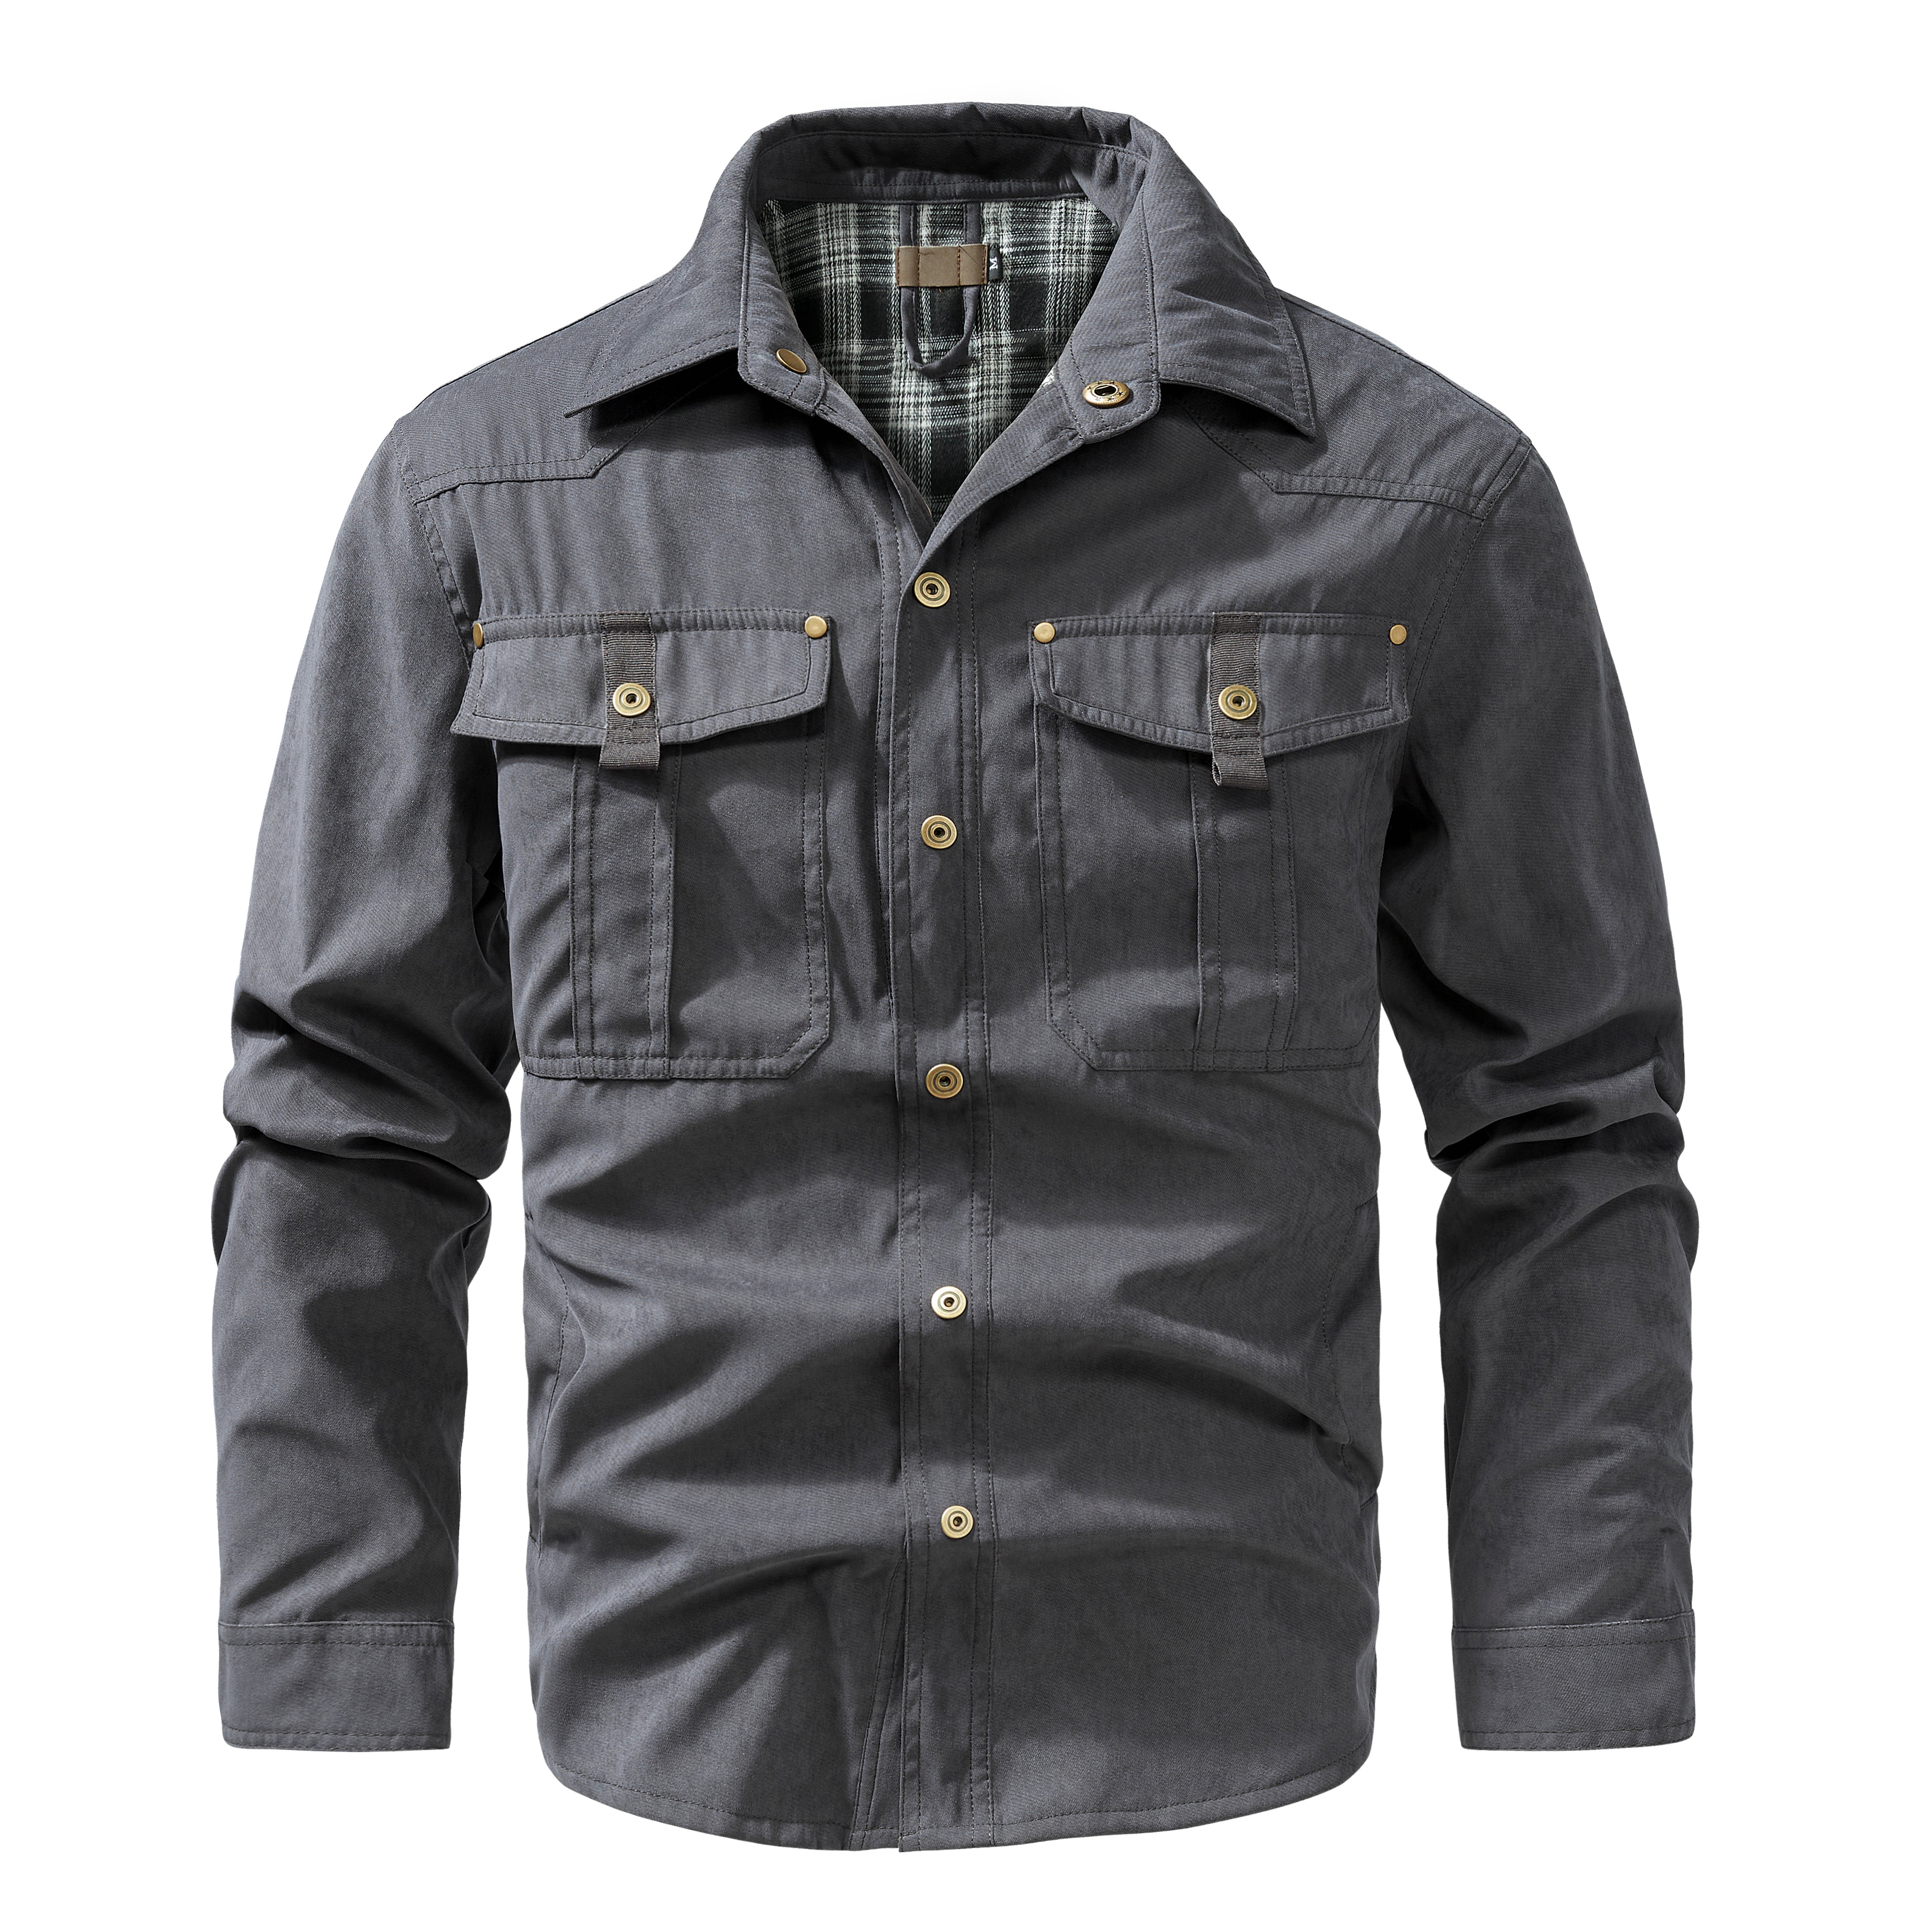 Winchester Jacket – Foxtrot Outerwear